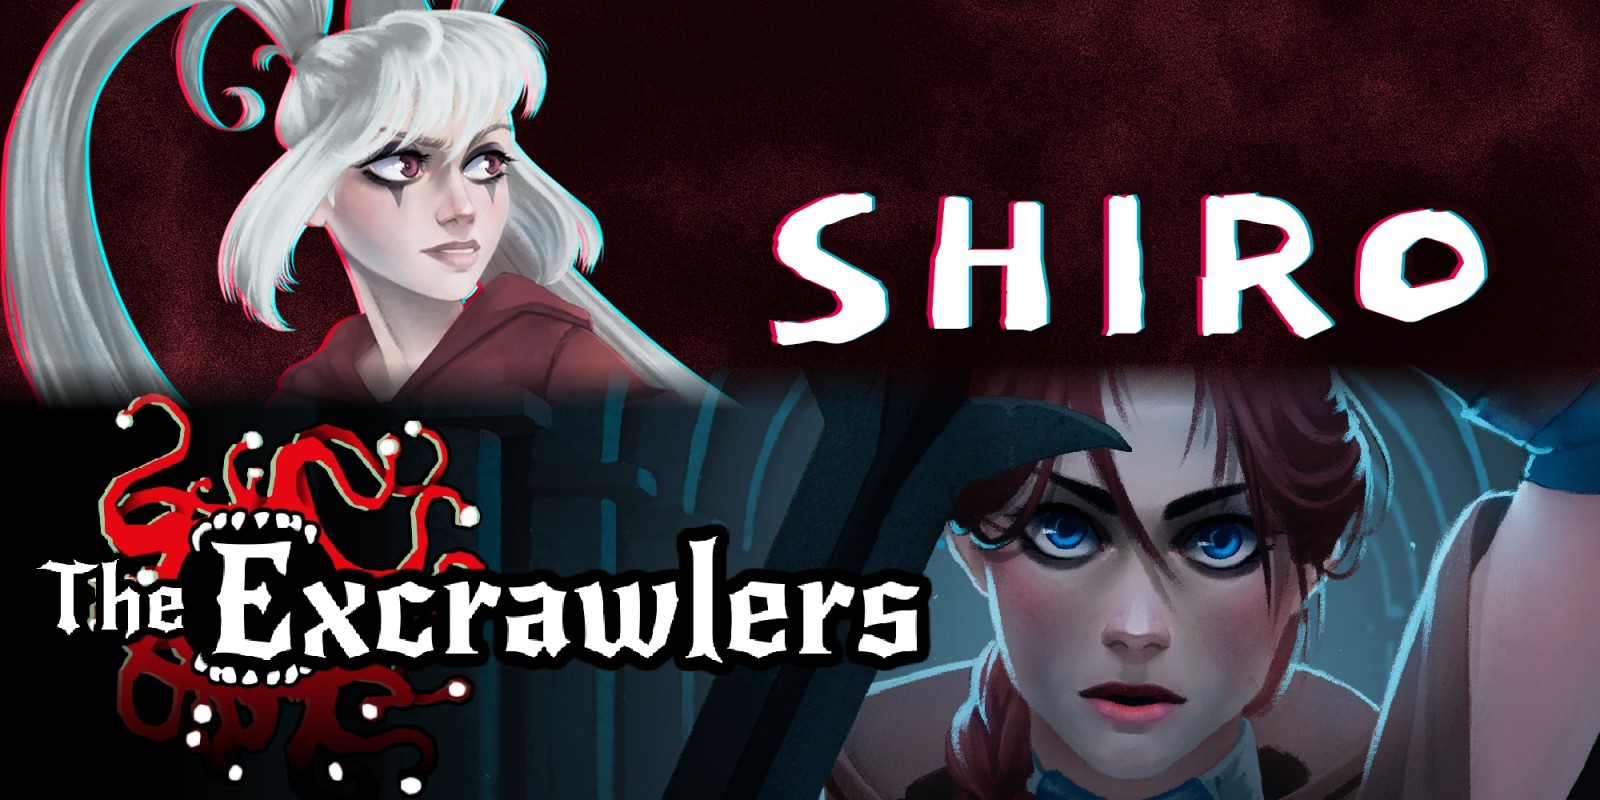 The Excrawlers + Shiro Bundle